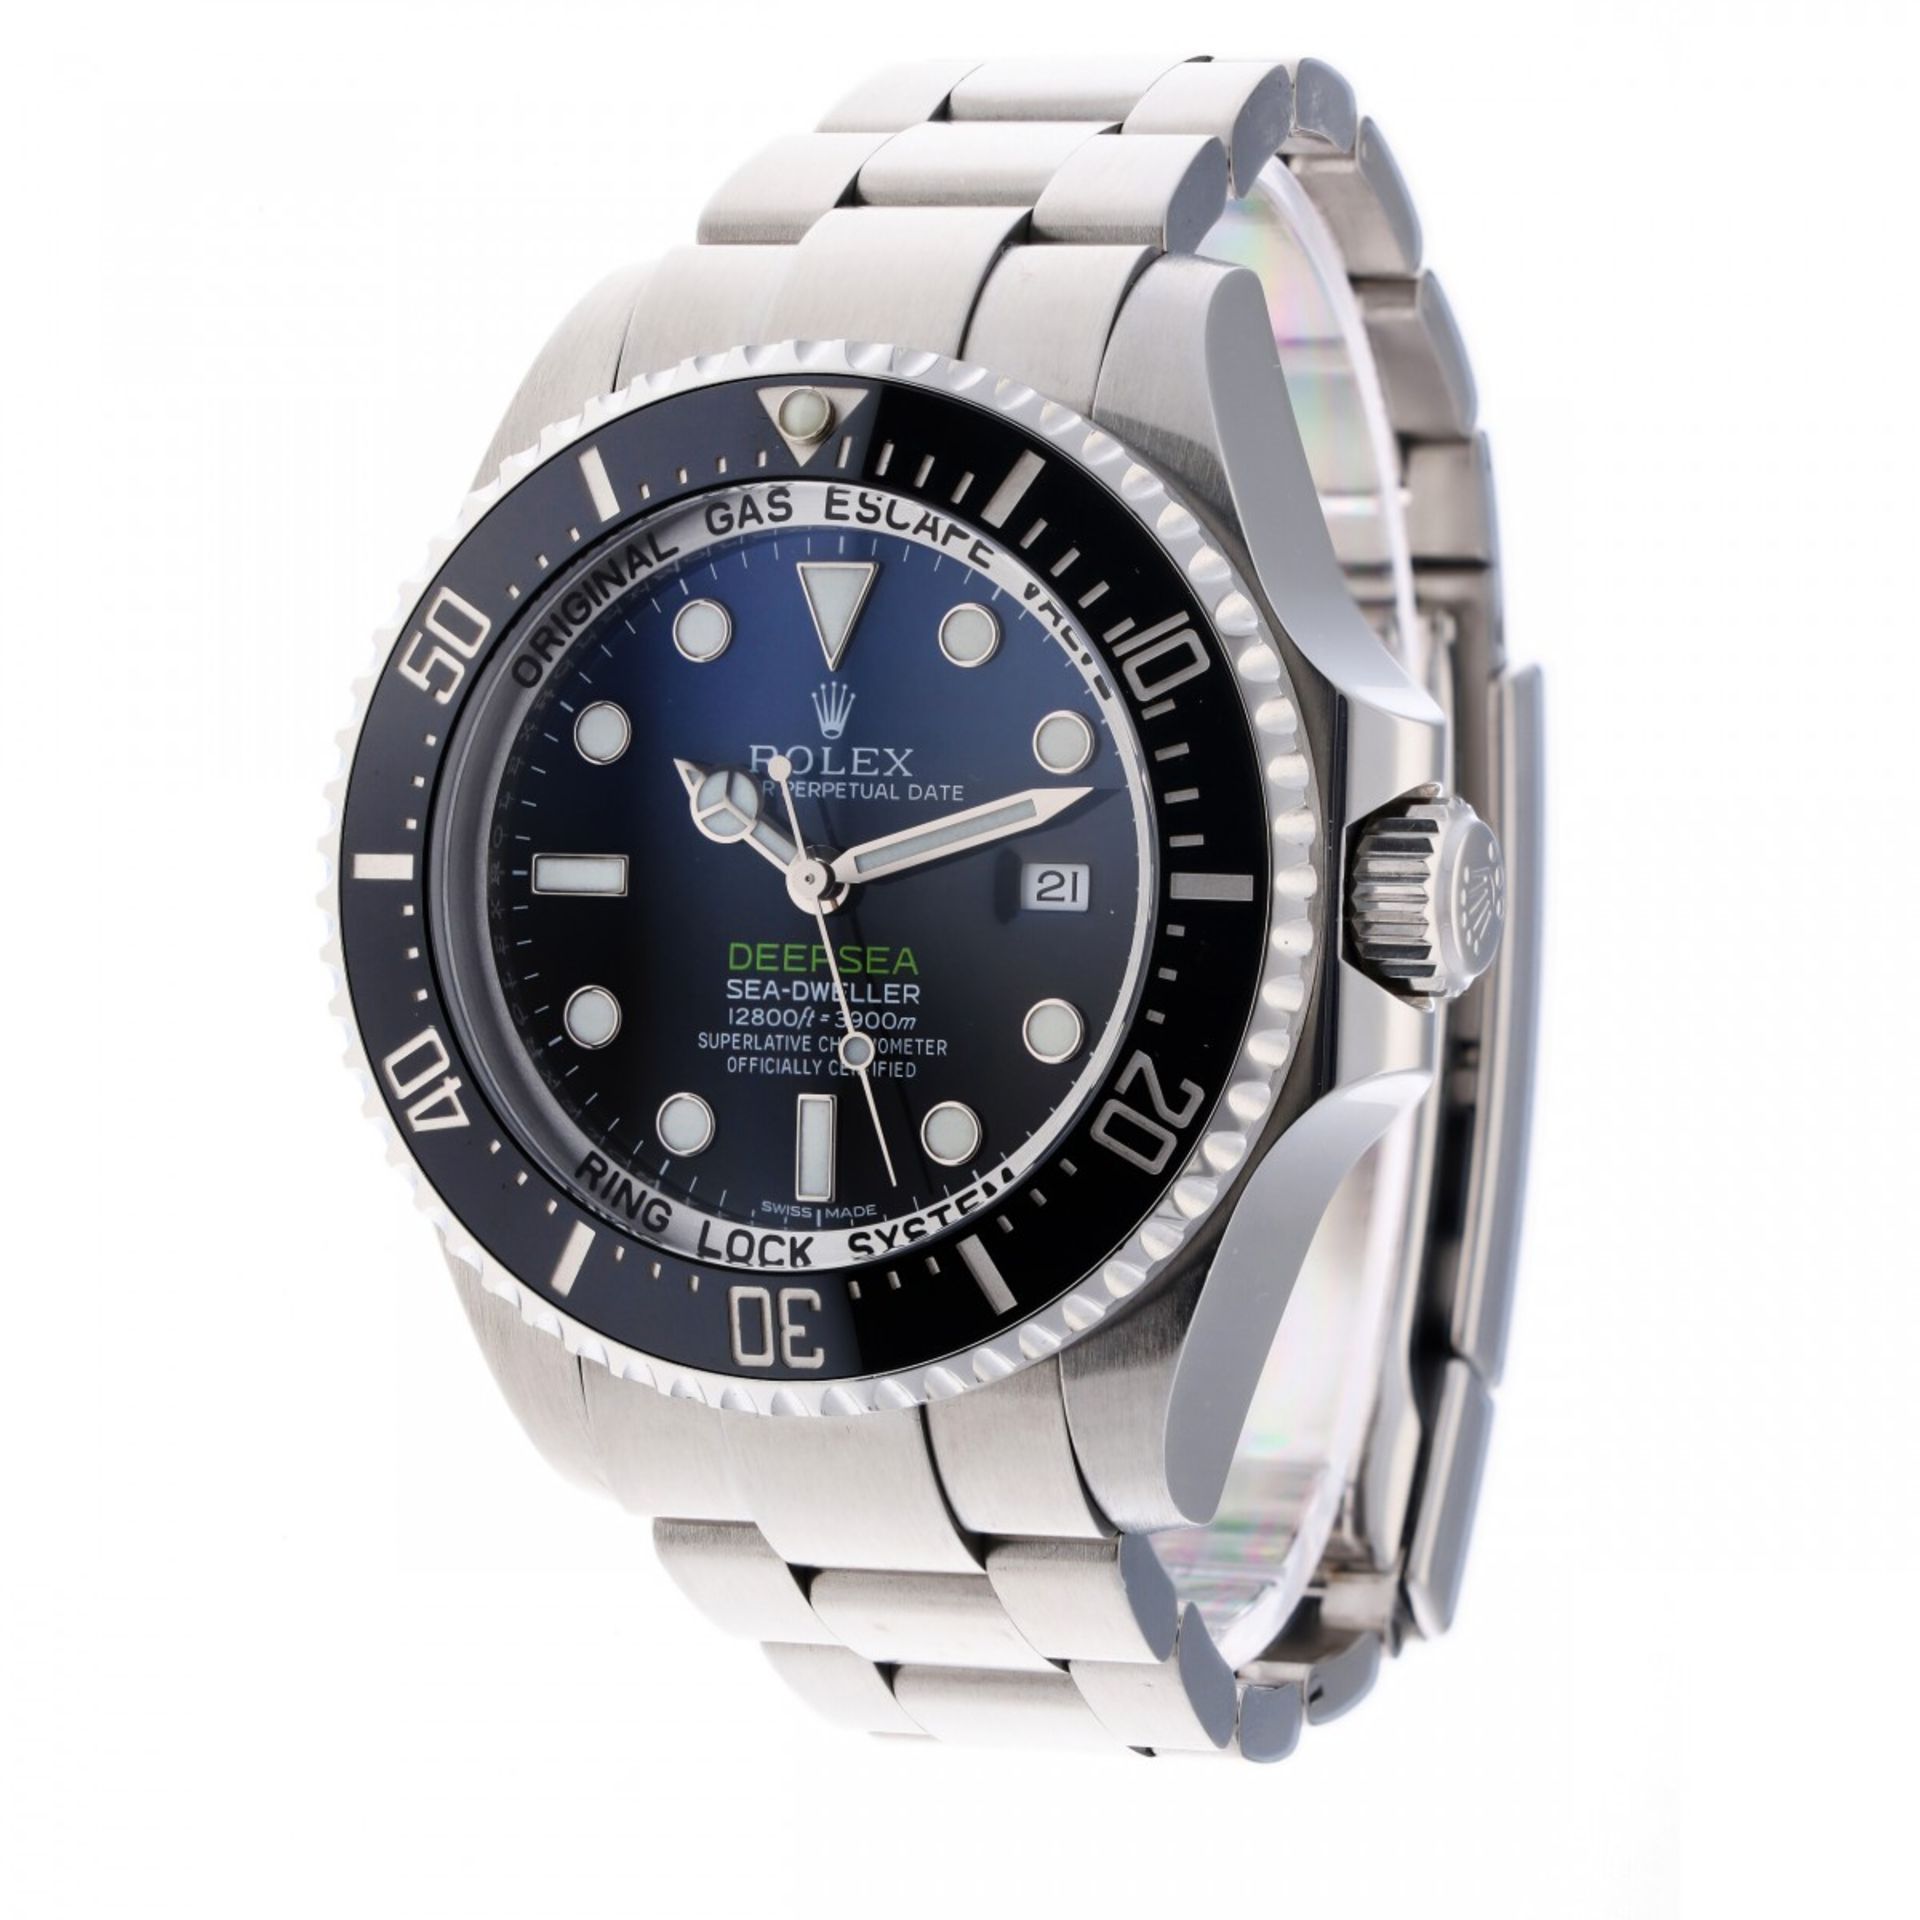 Rolex Sea Dweller Deepsea 116660 - Men's watch - approx. 2018 - Image 2 of 9